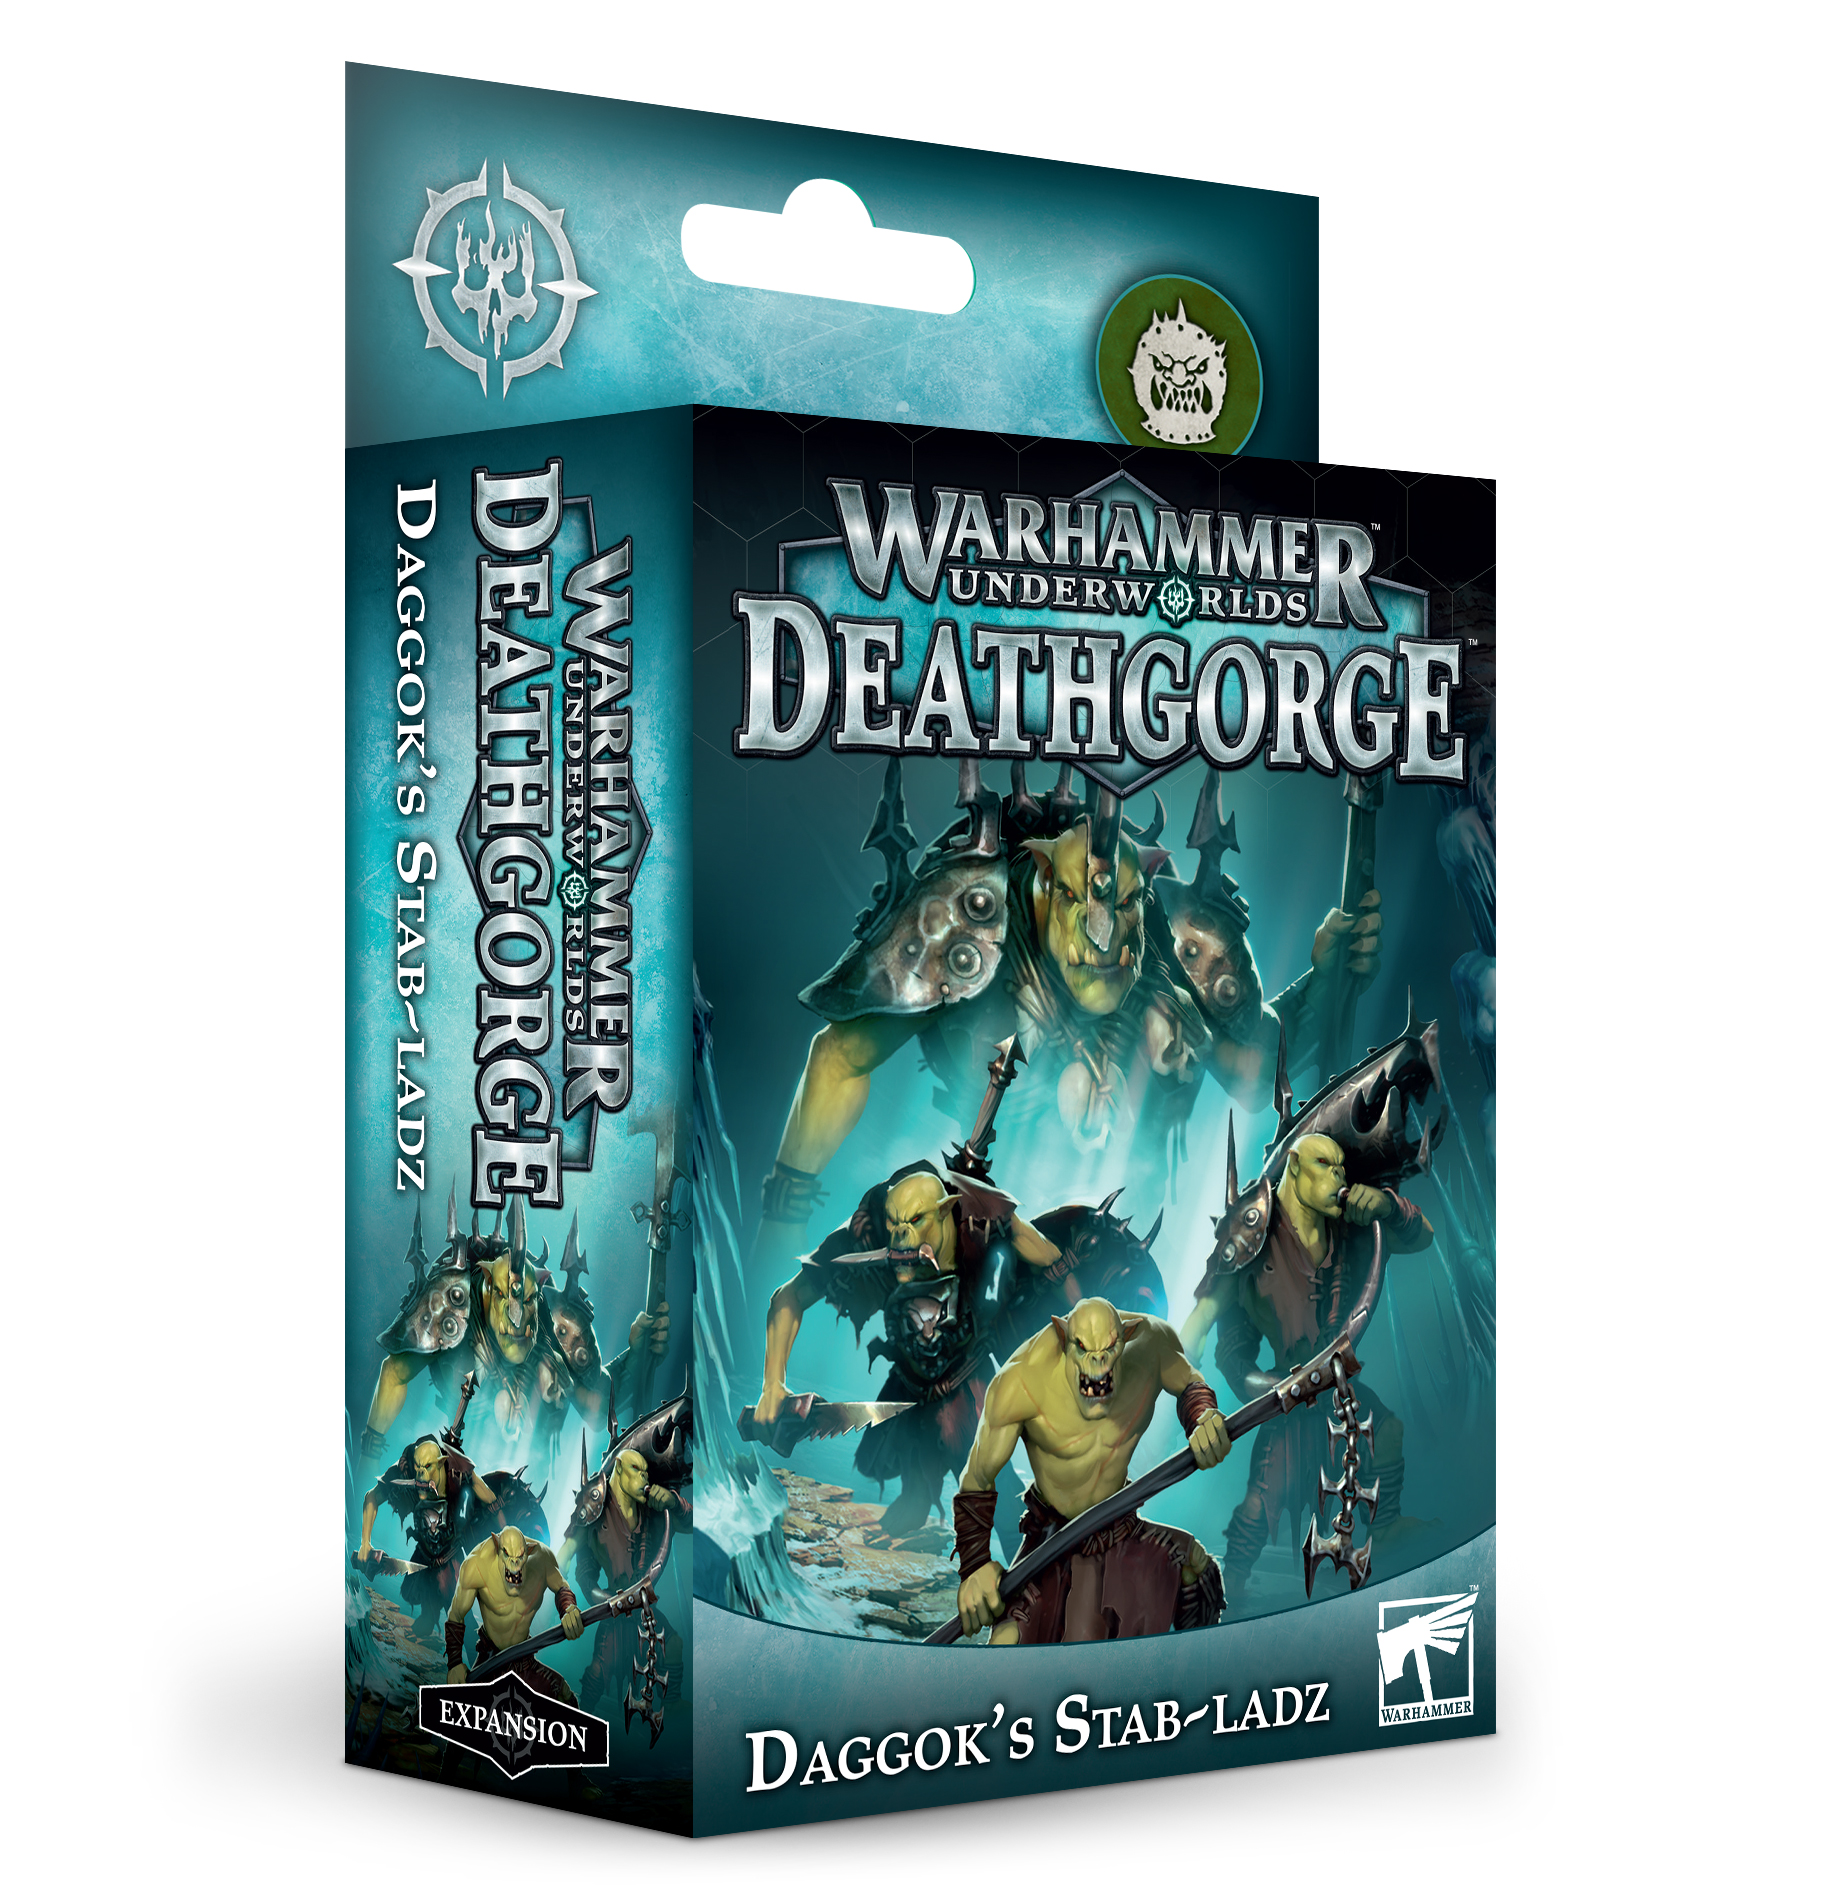 Warhammer Underworlds: Death Gorge: Daggoks Stab-Ladz 